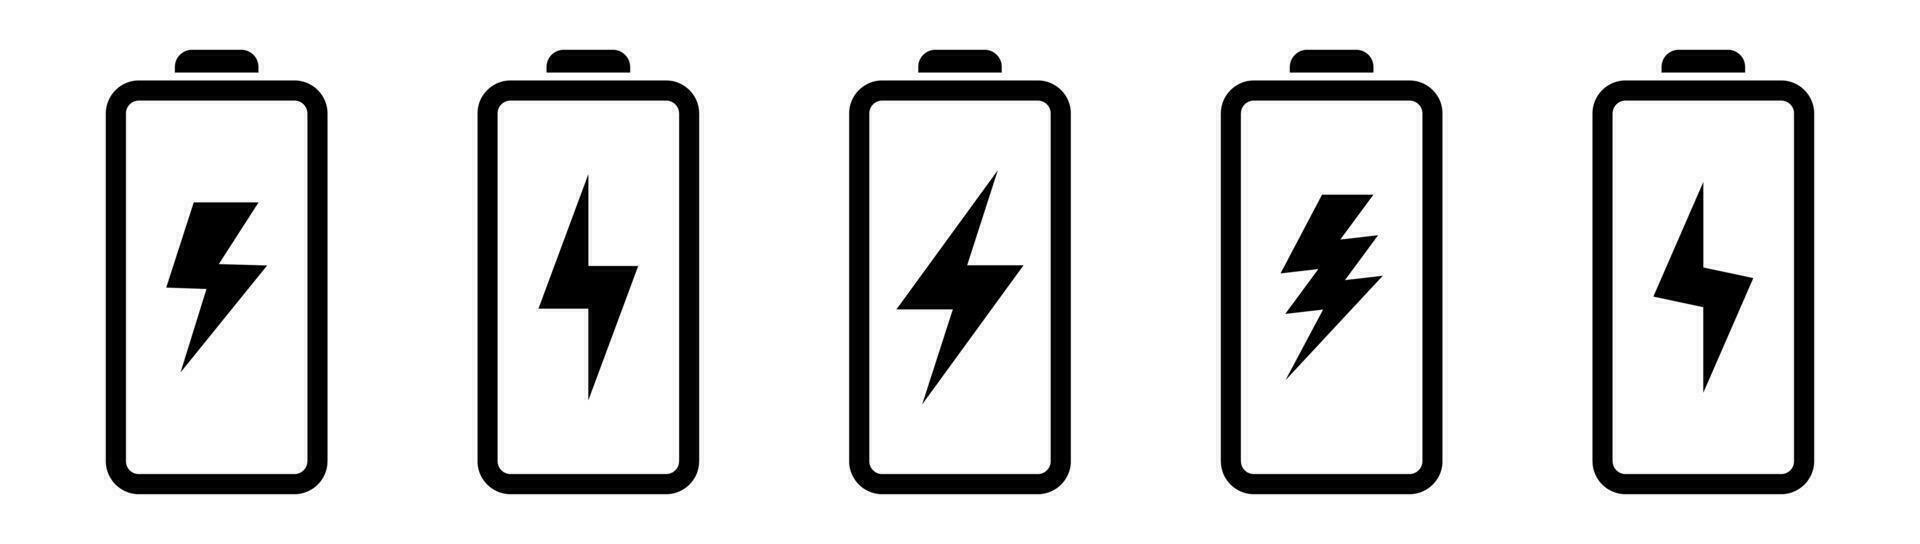 bateria ícone com relâmpago parafuso placa. bateria cobrando ícone com relâmpago parafuso símbolo. vetor